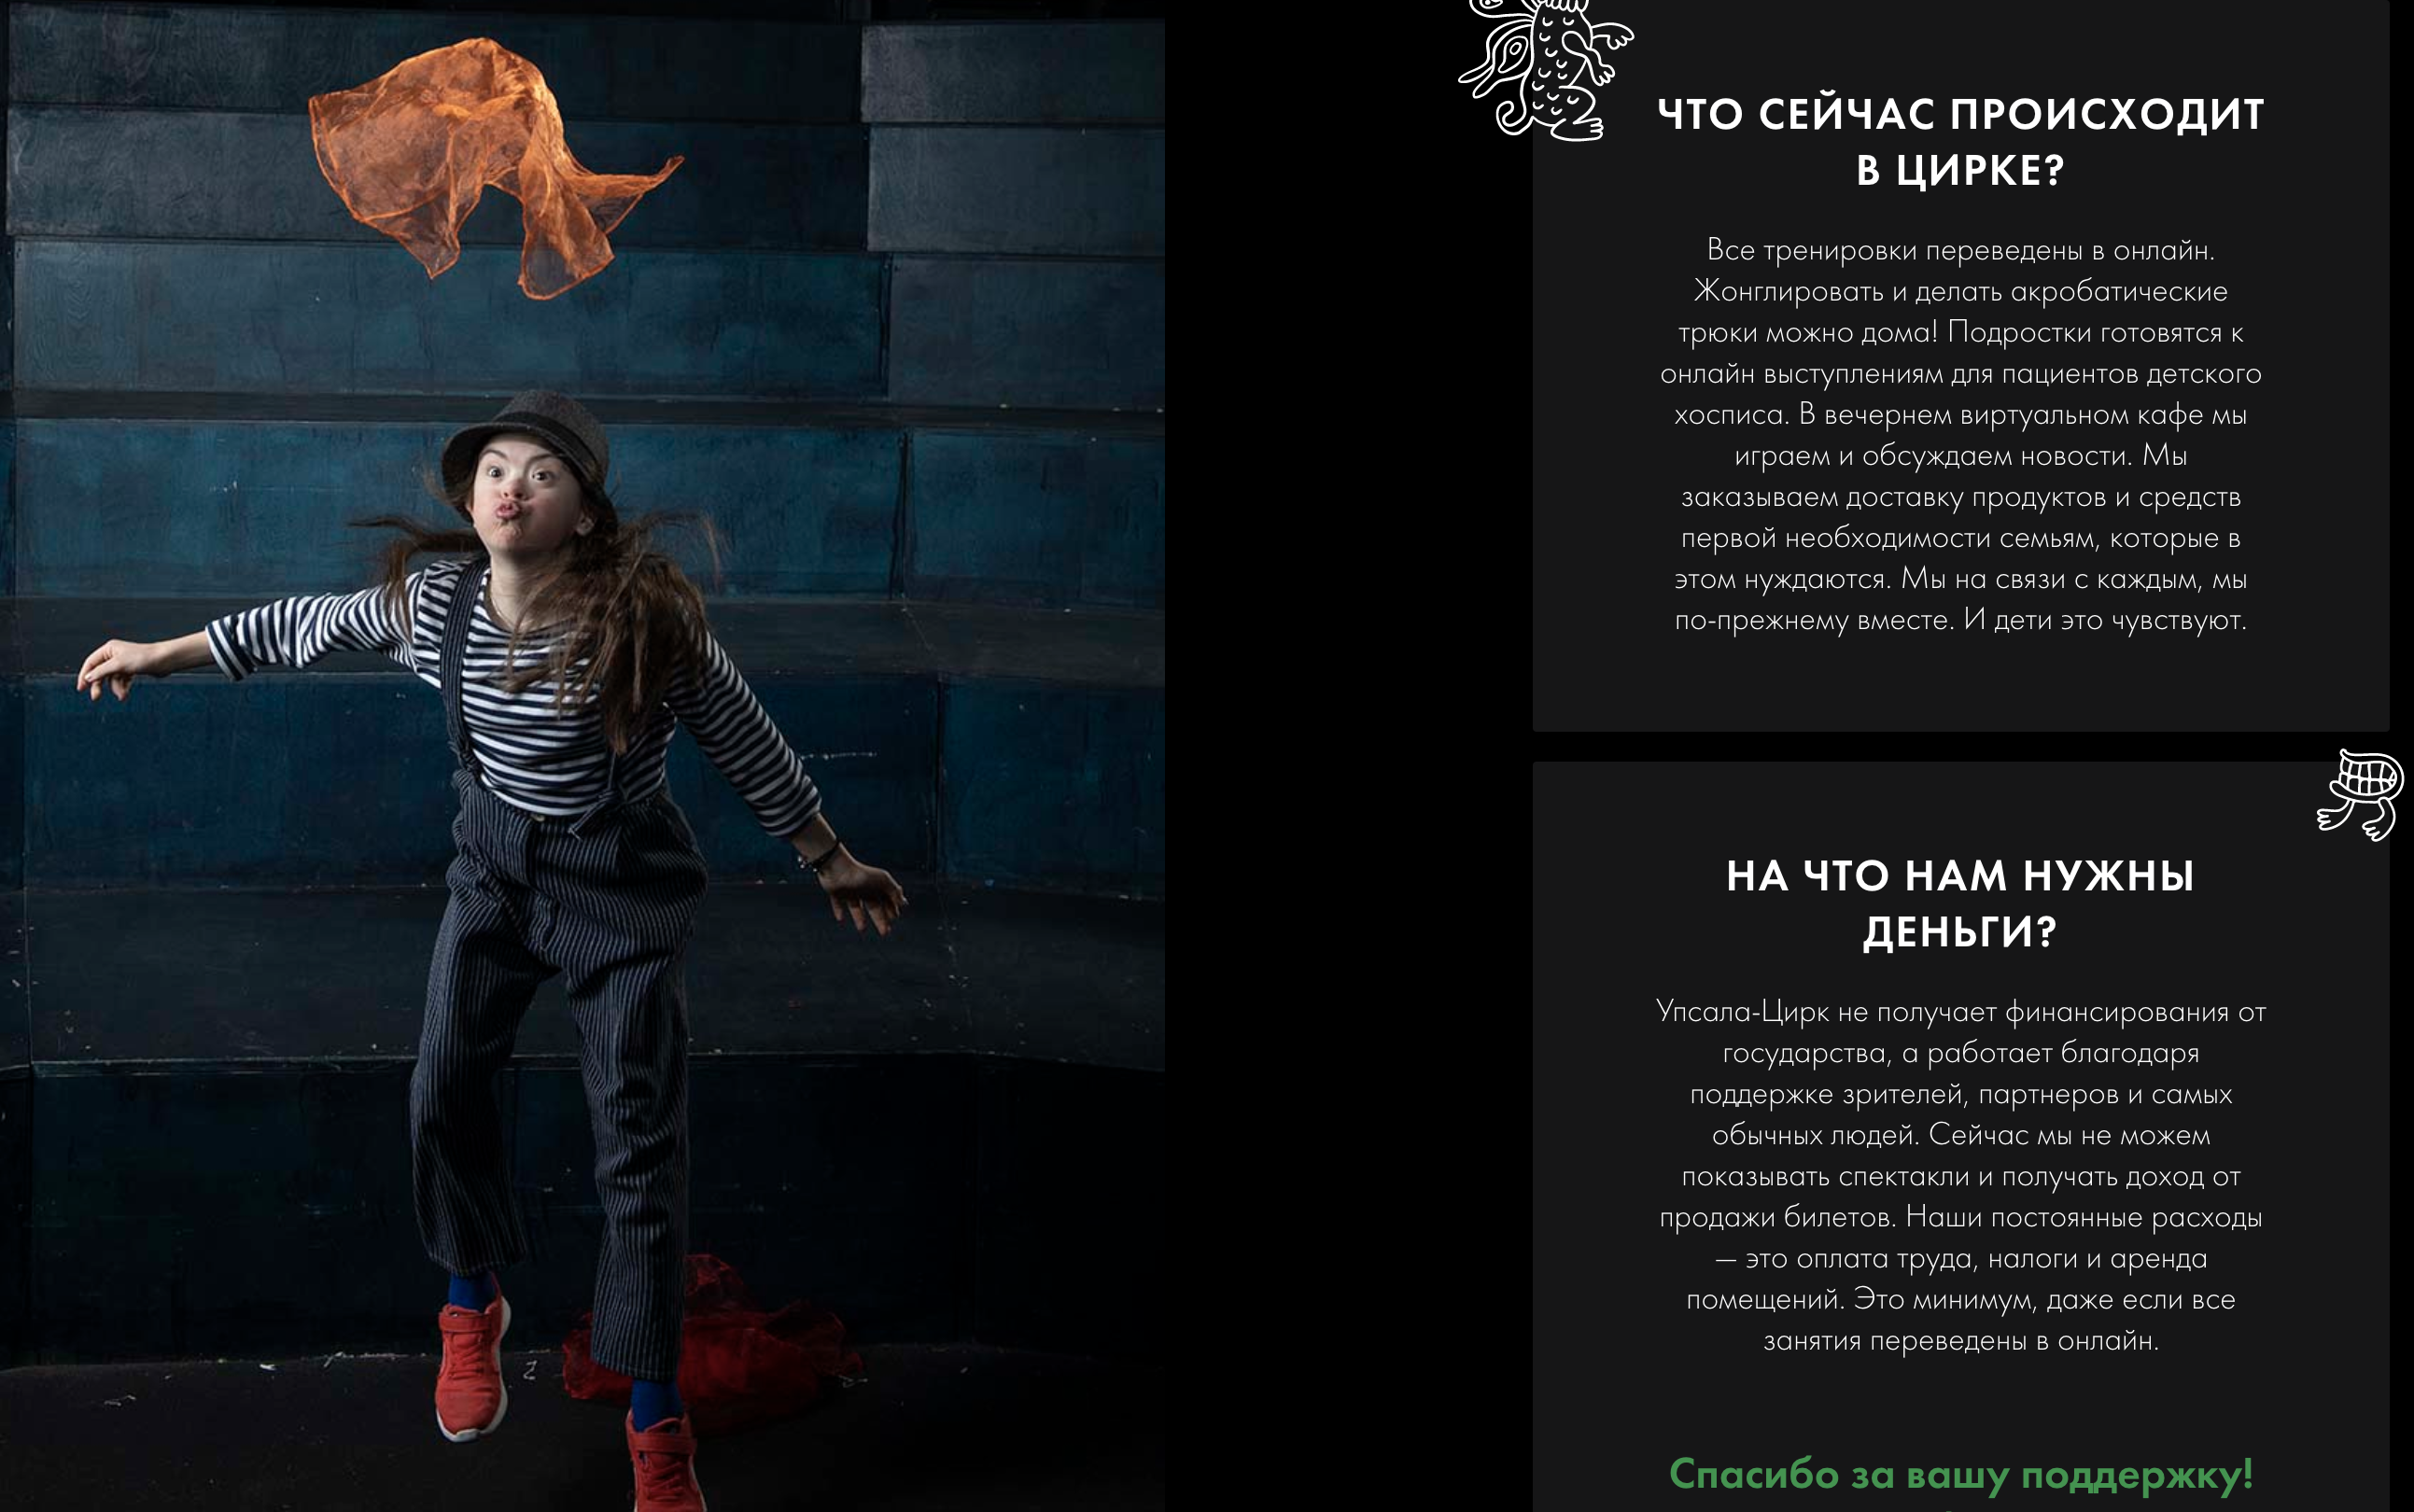 Обновленная главная страница сайта "Упсала-цирка", скриншот с сайта.